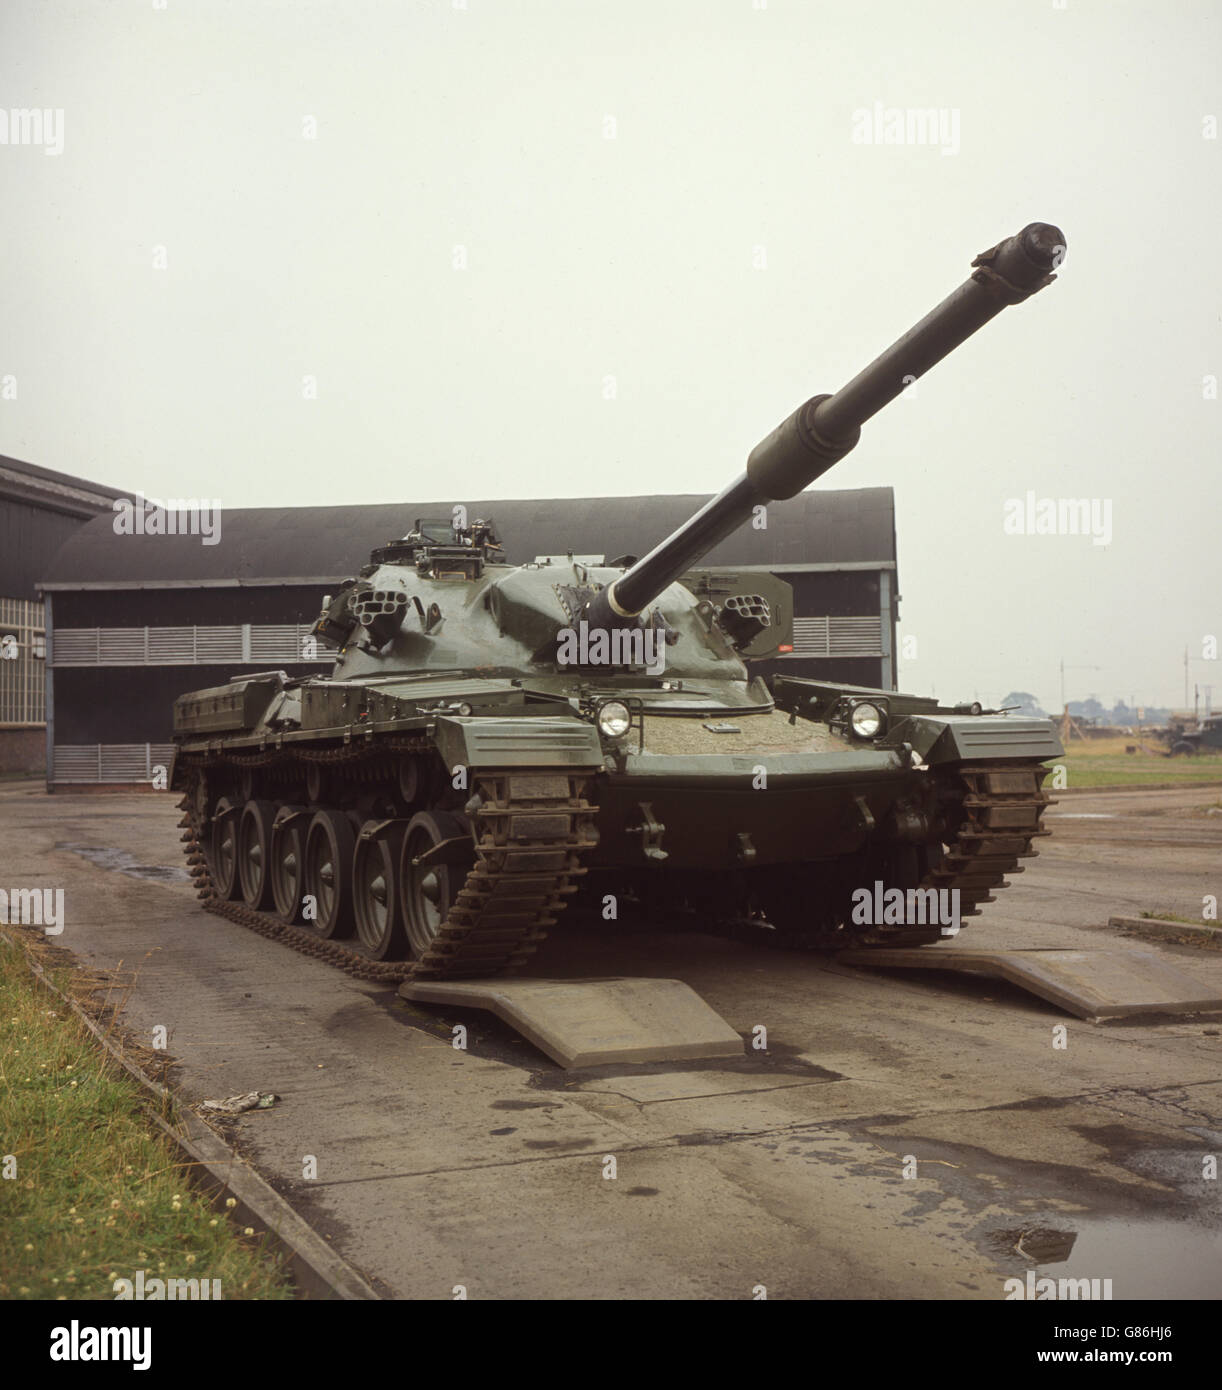 Military - British Army New Tank Stock Photo